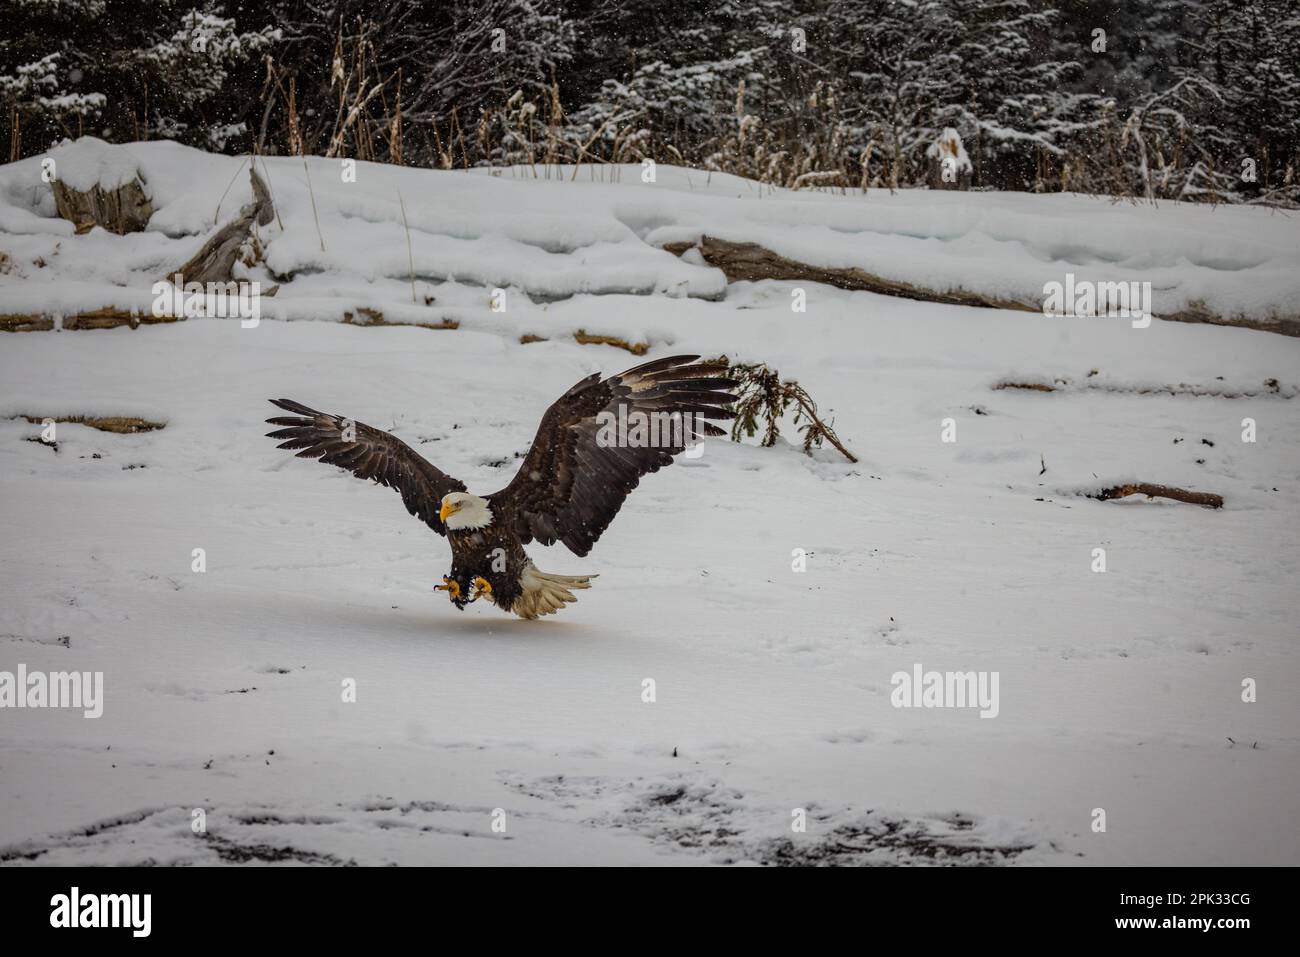 Aquila che sfreccia giù sulla spiaggia coperta di neve per raccogliere i pesci con i taloni estesi Foto Stock